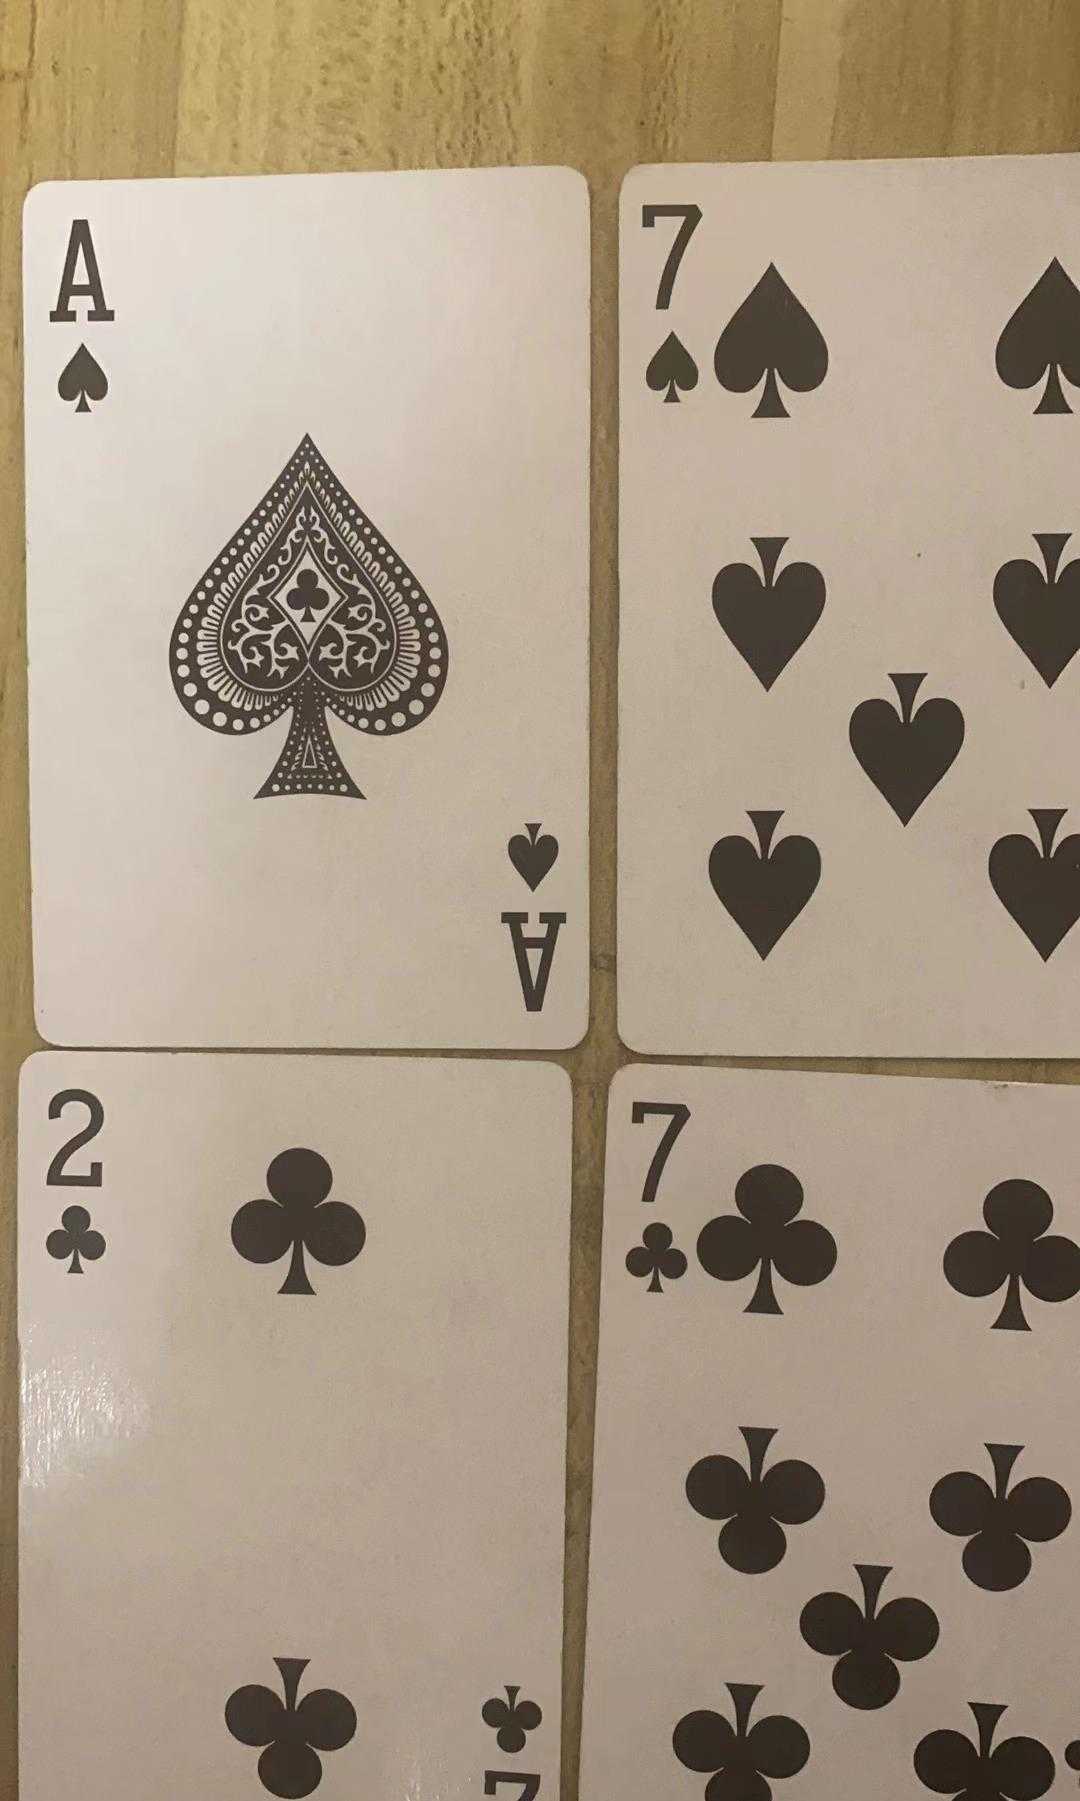 巧算24点游戏，四张牌都是十及以下的牌没有花牌系列...